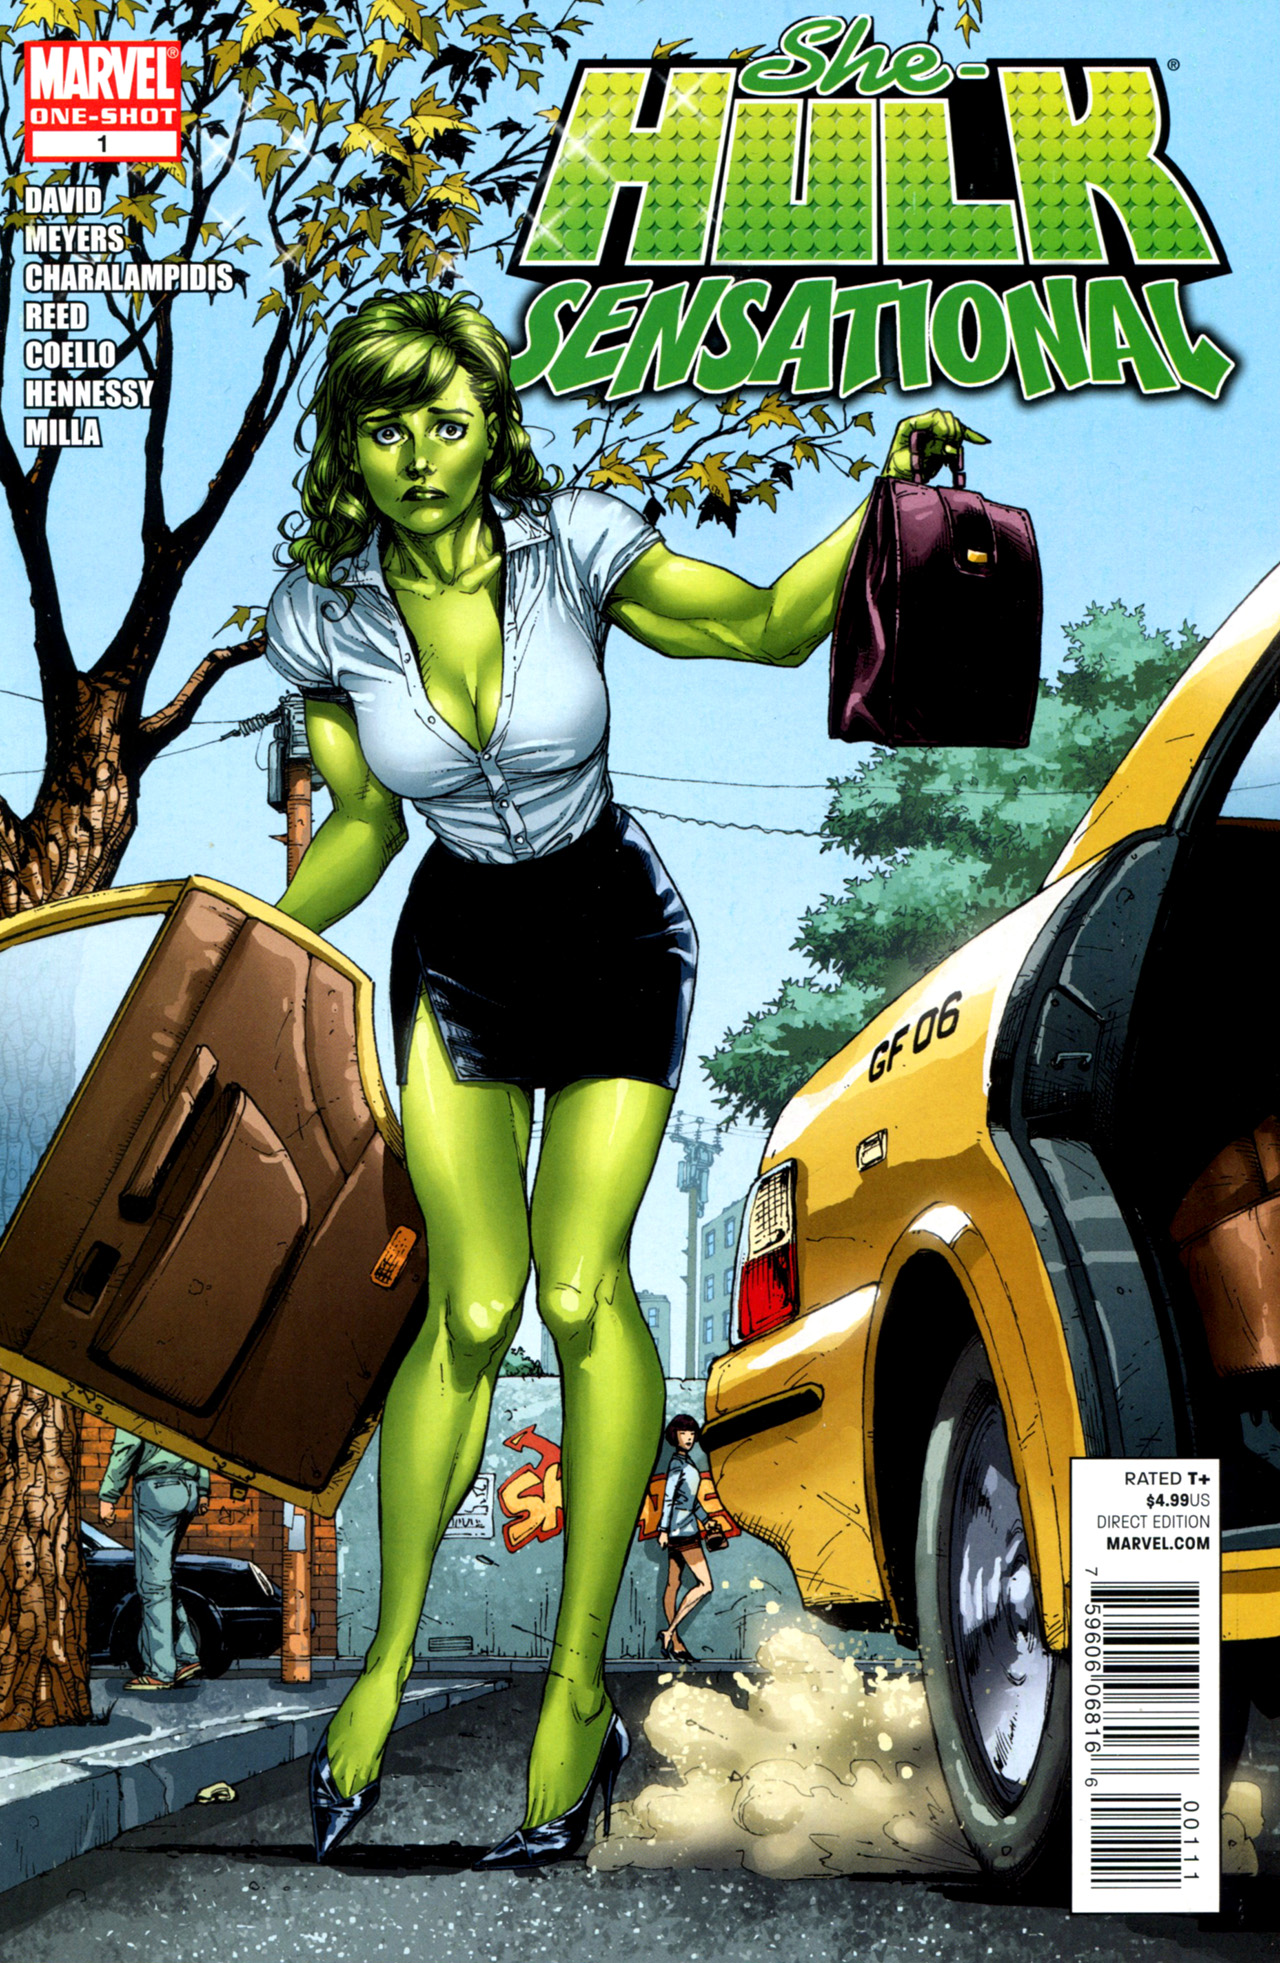 Read online She-Hulk Sensational comic -  Issue # Full - 1